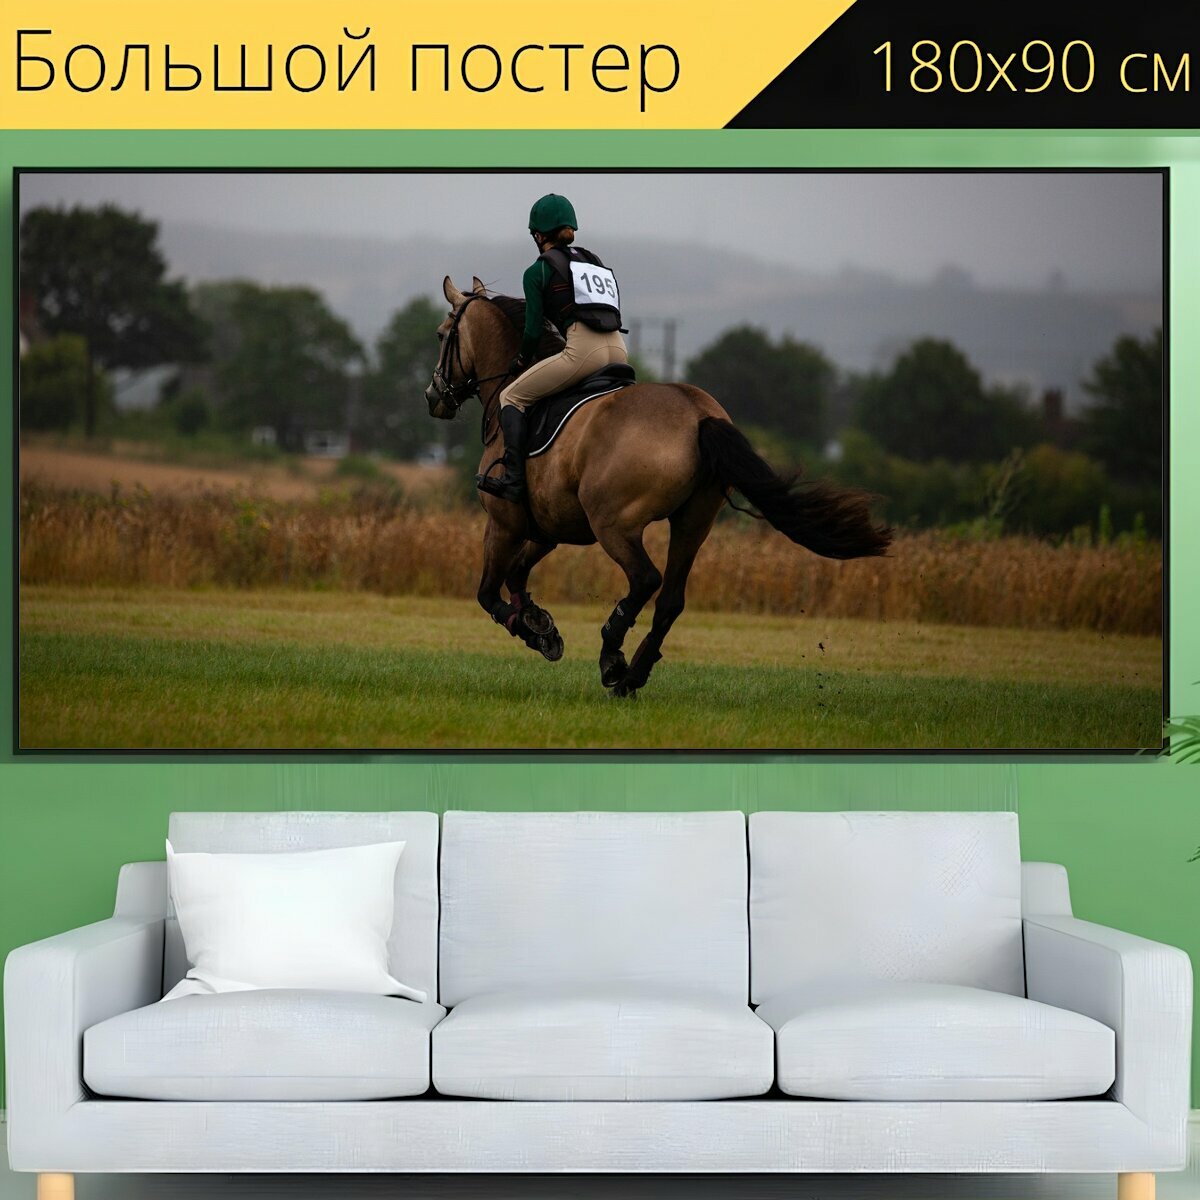 Большой постер "Лошадь, скачущий, галопом" 180 x 90 см. для интерьера